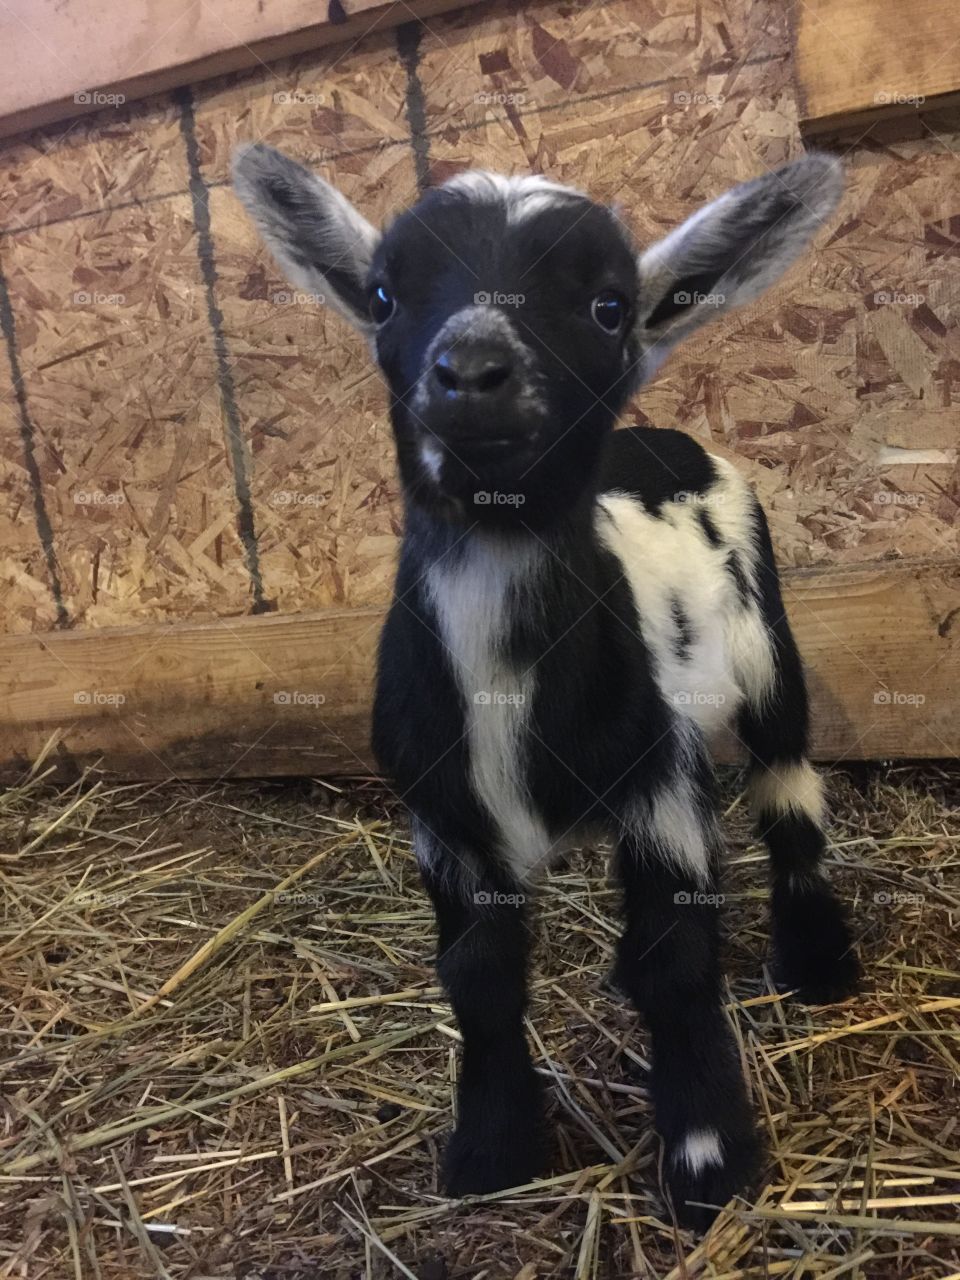 Happy goat